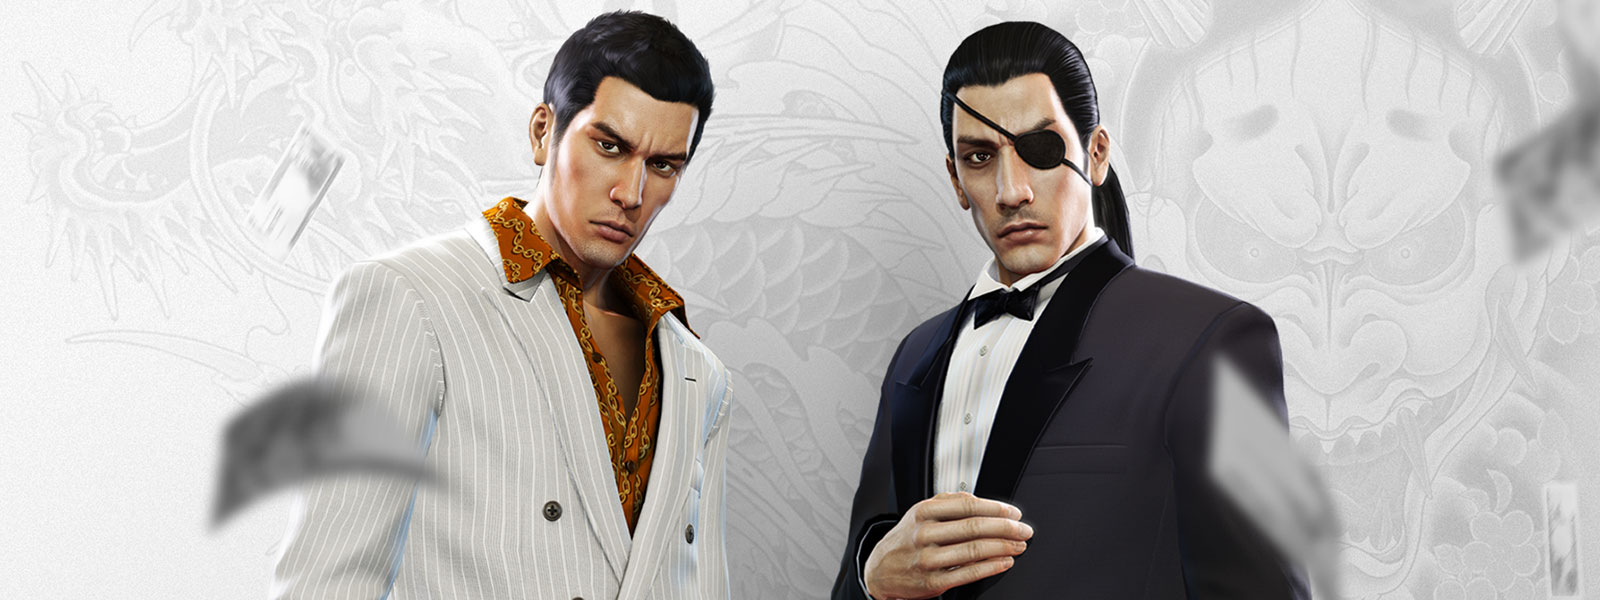 Dois personagens do Yakuza em ternos chiques observam enquanto dinheiro cai ao seu redor, com um fundo de tatuagem de dragão em branco e cinza